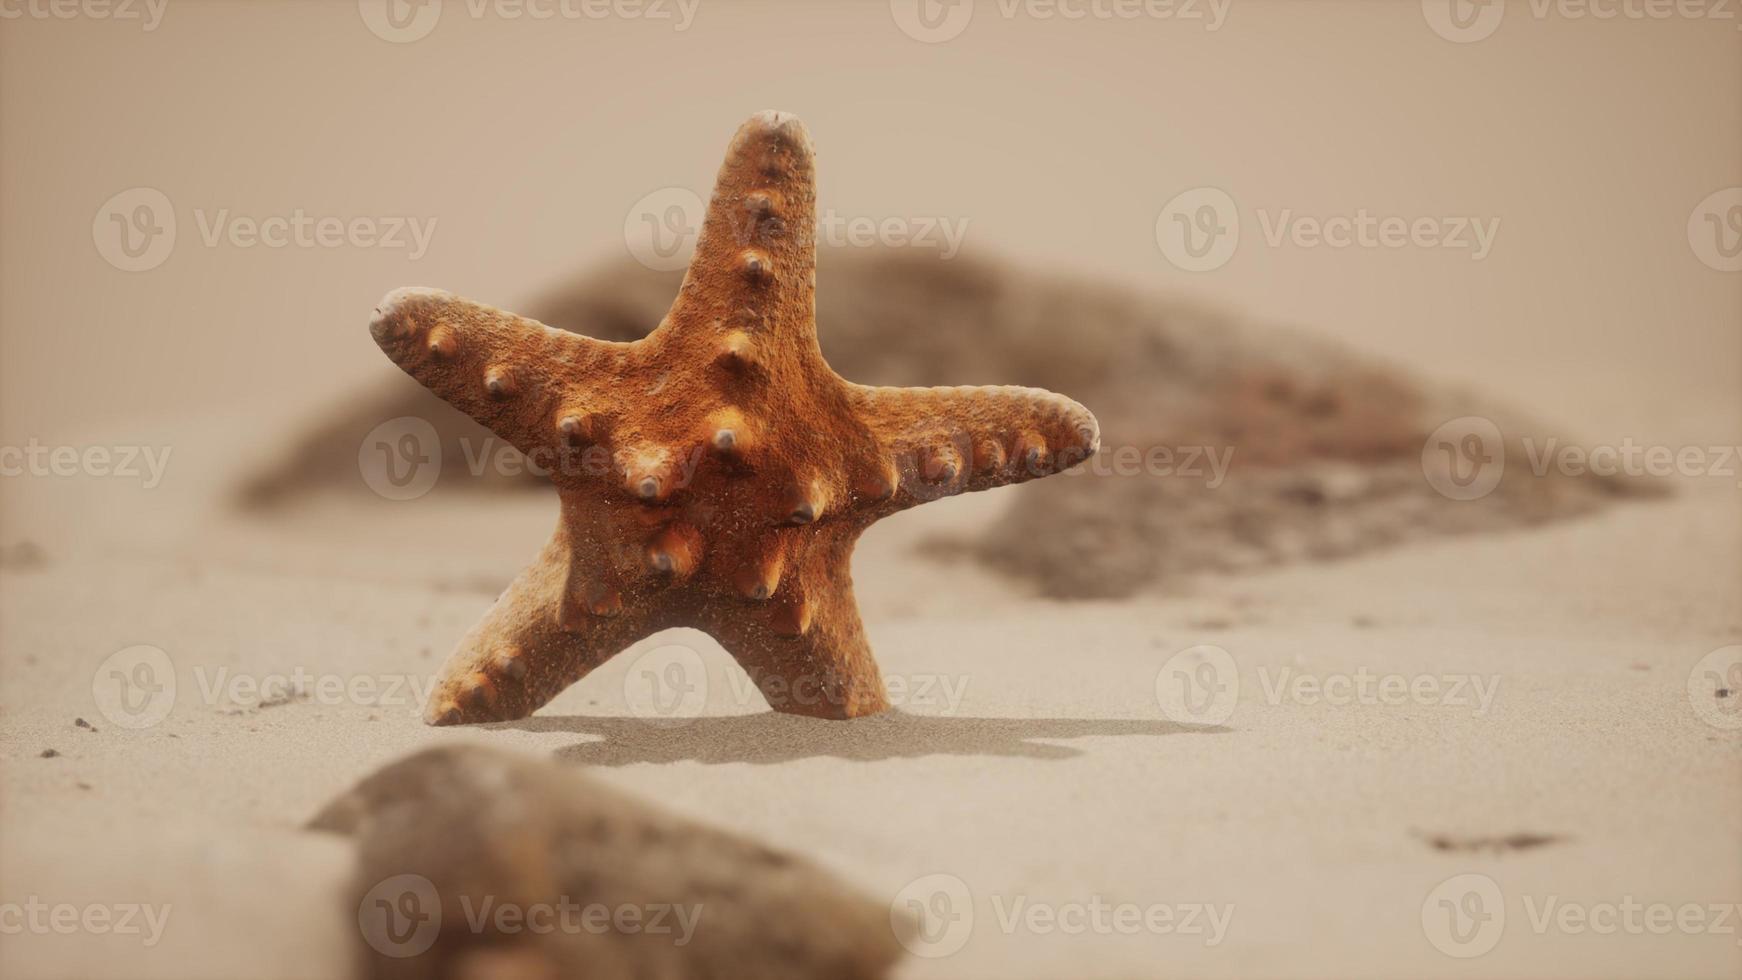 stella marina rossa sulla spiaggia dell'oceano con sabbia dorata foto